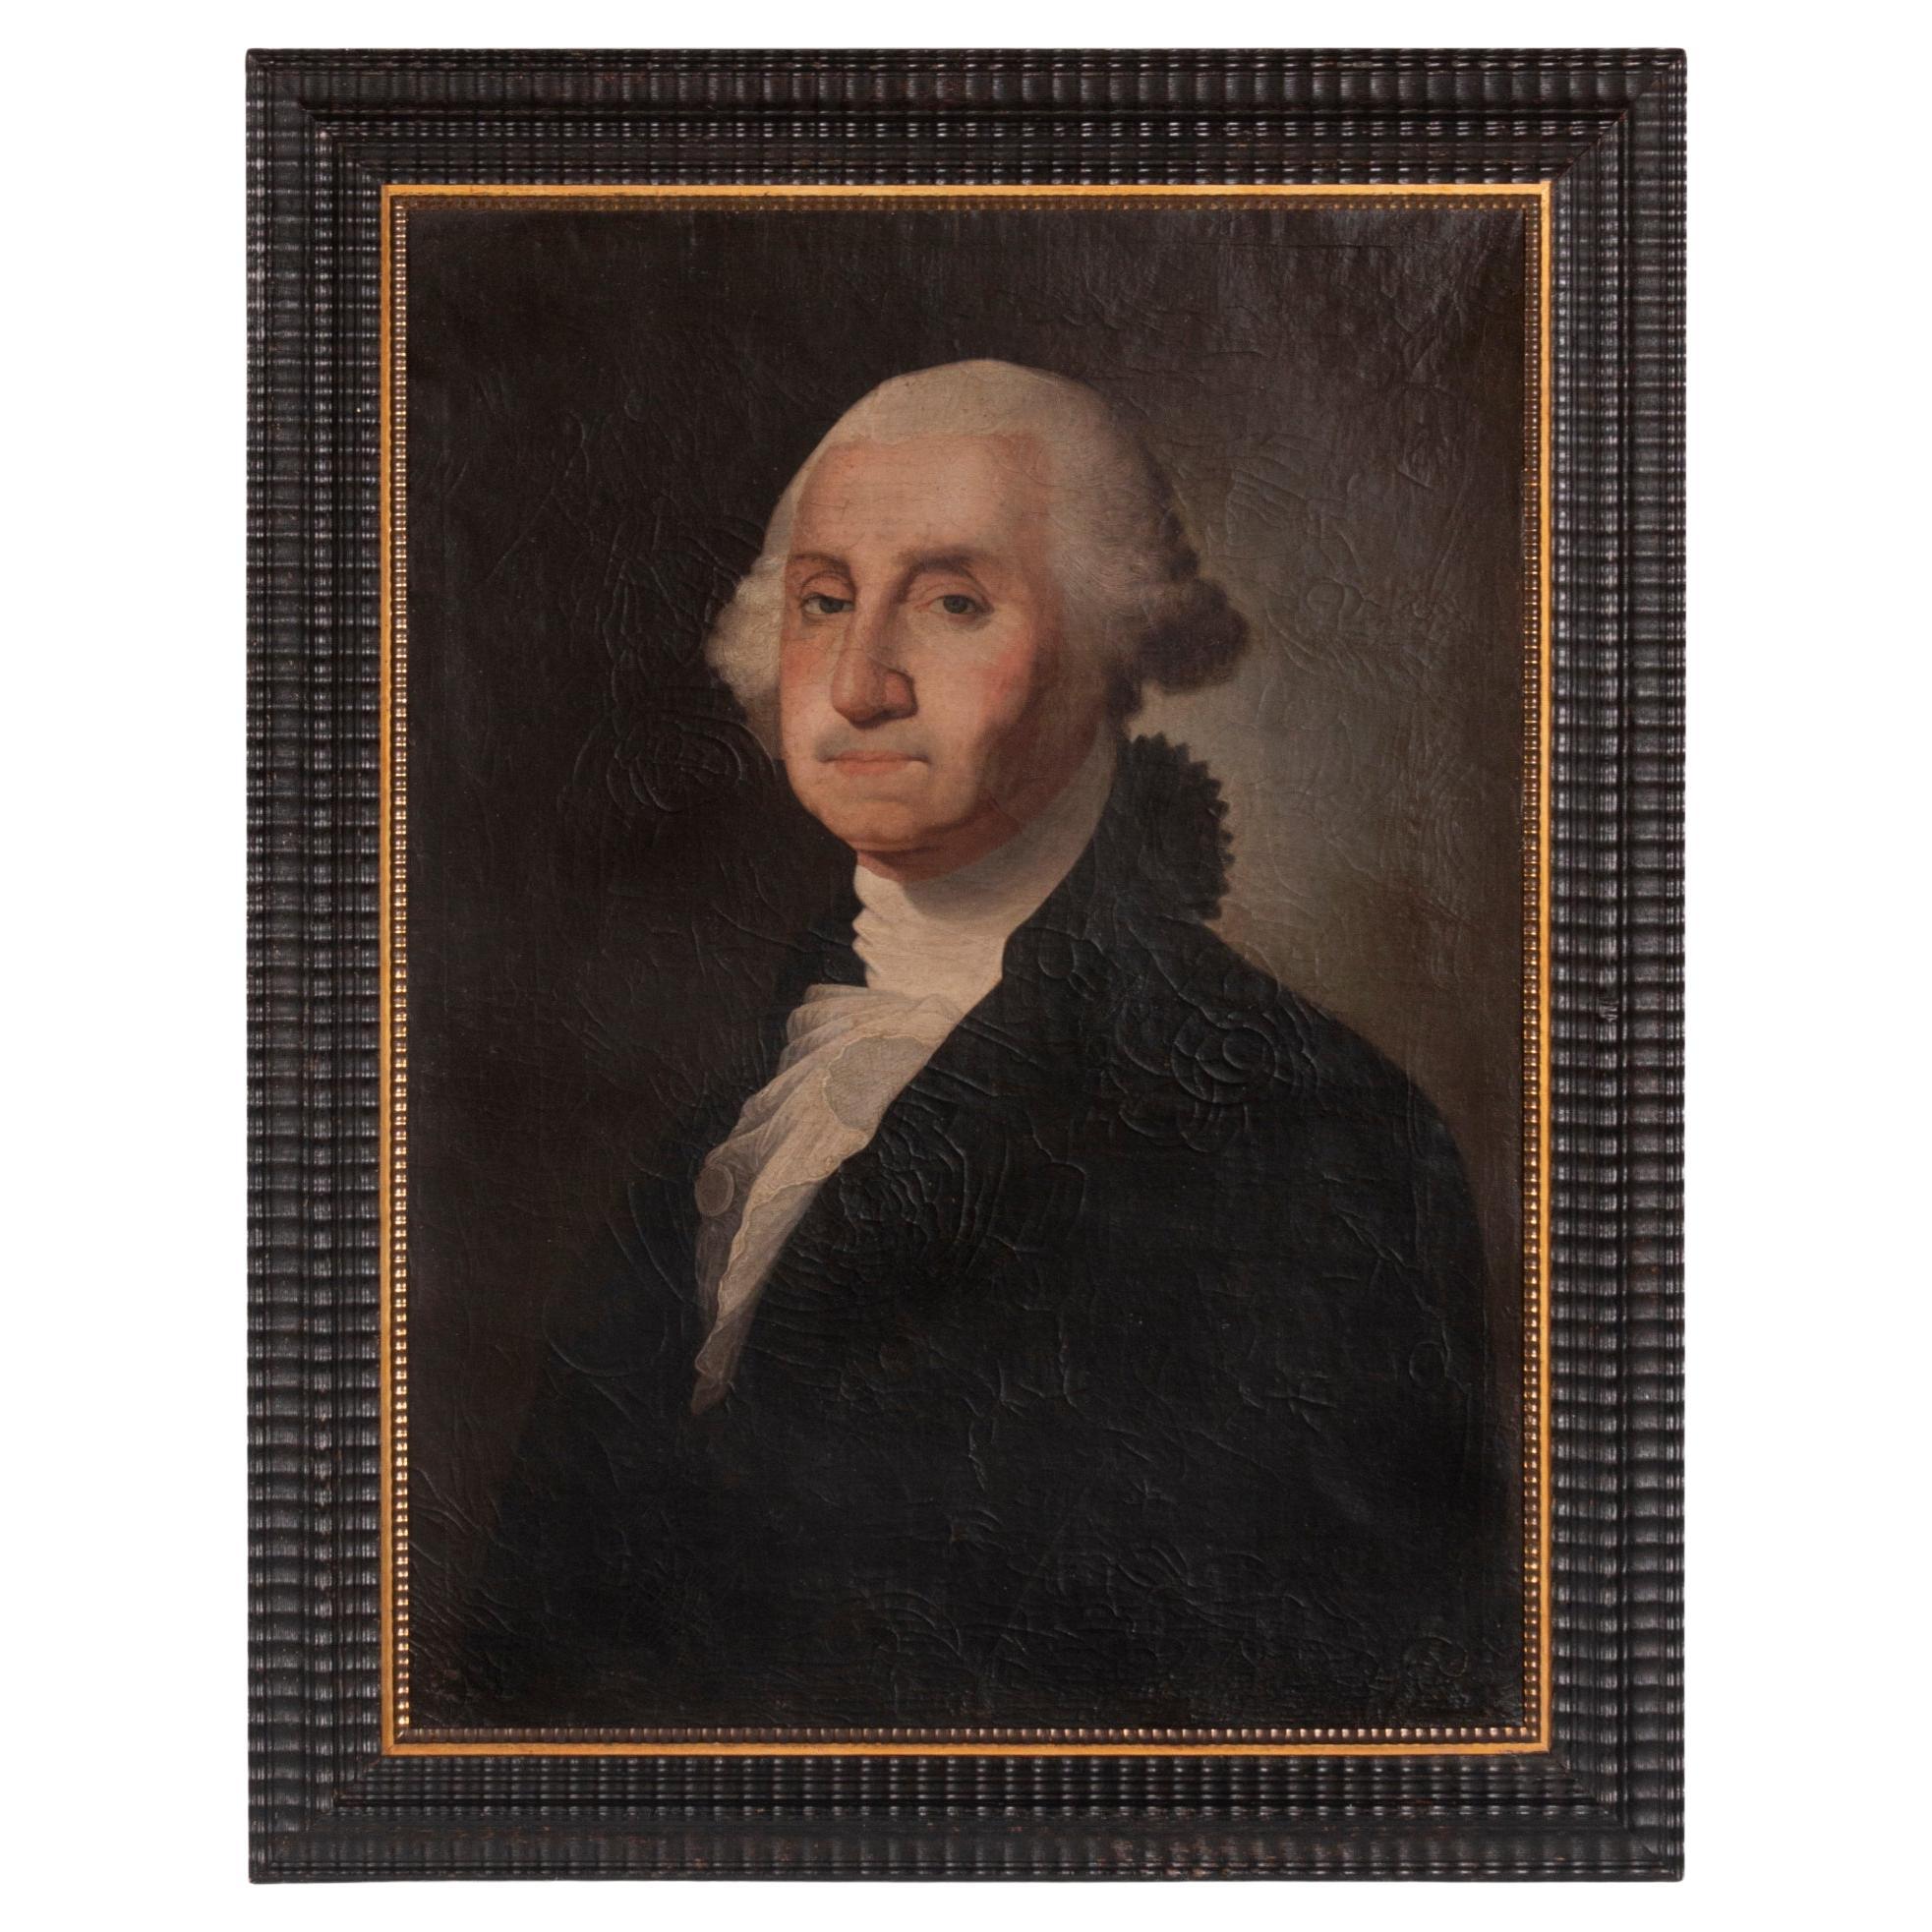 George Washington Painting, Oil on Canvas, ca 1850